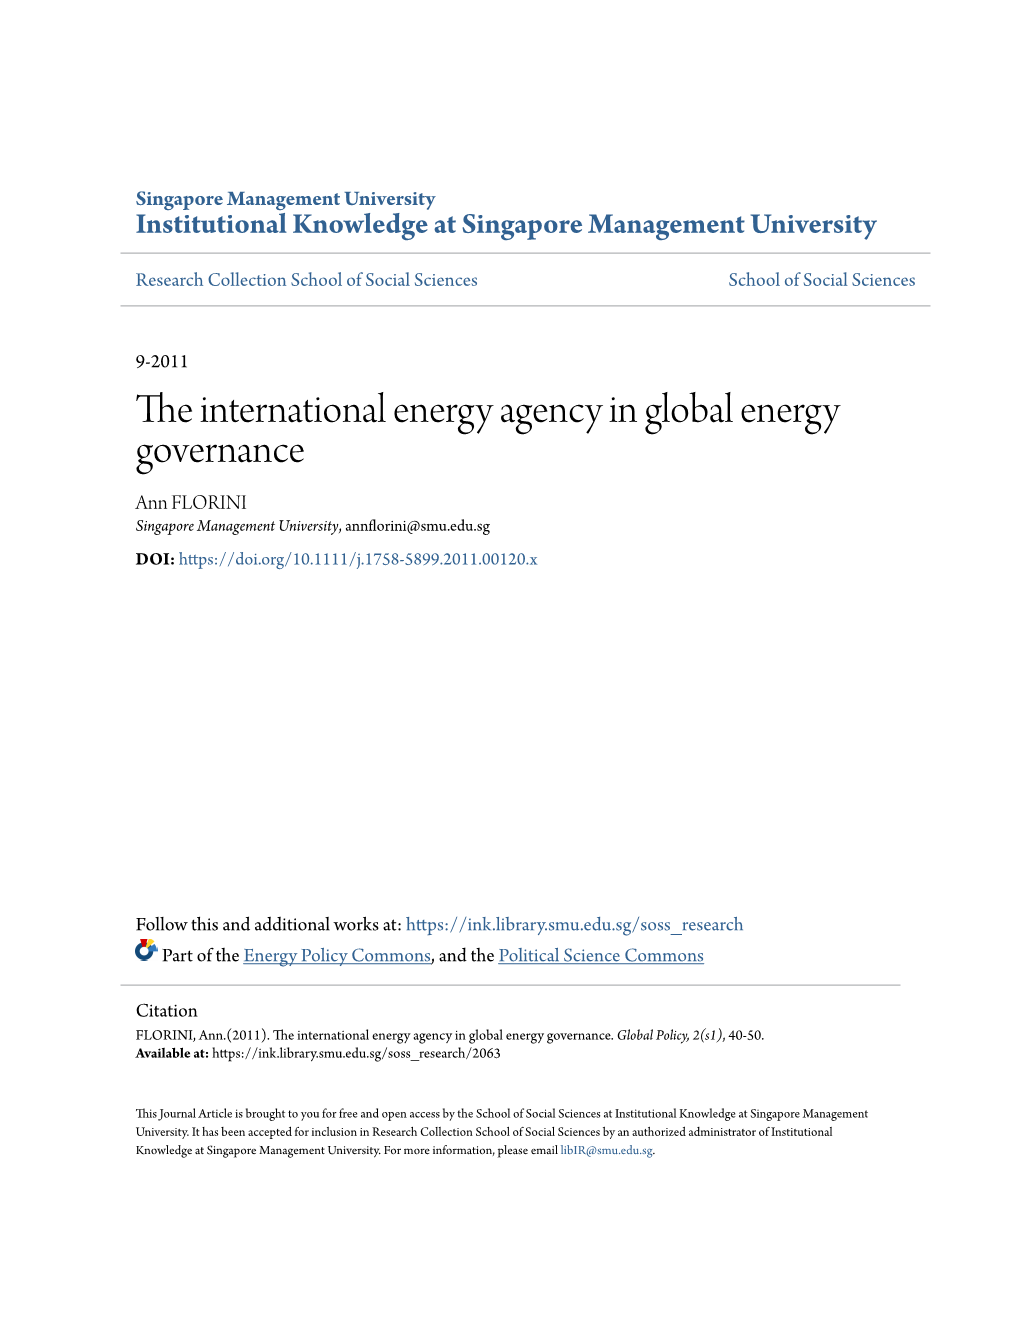 The International Energy Agency in Global Energy Governance